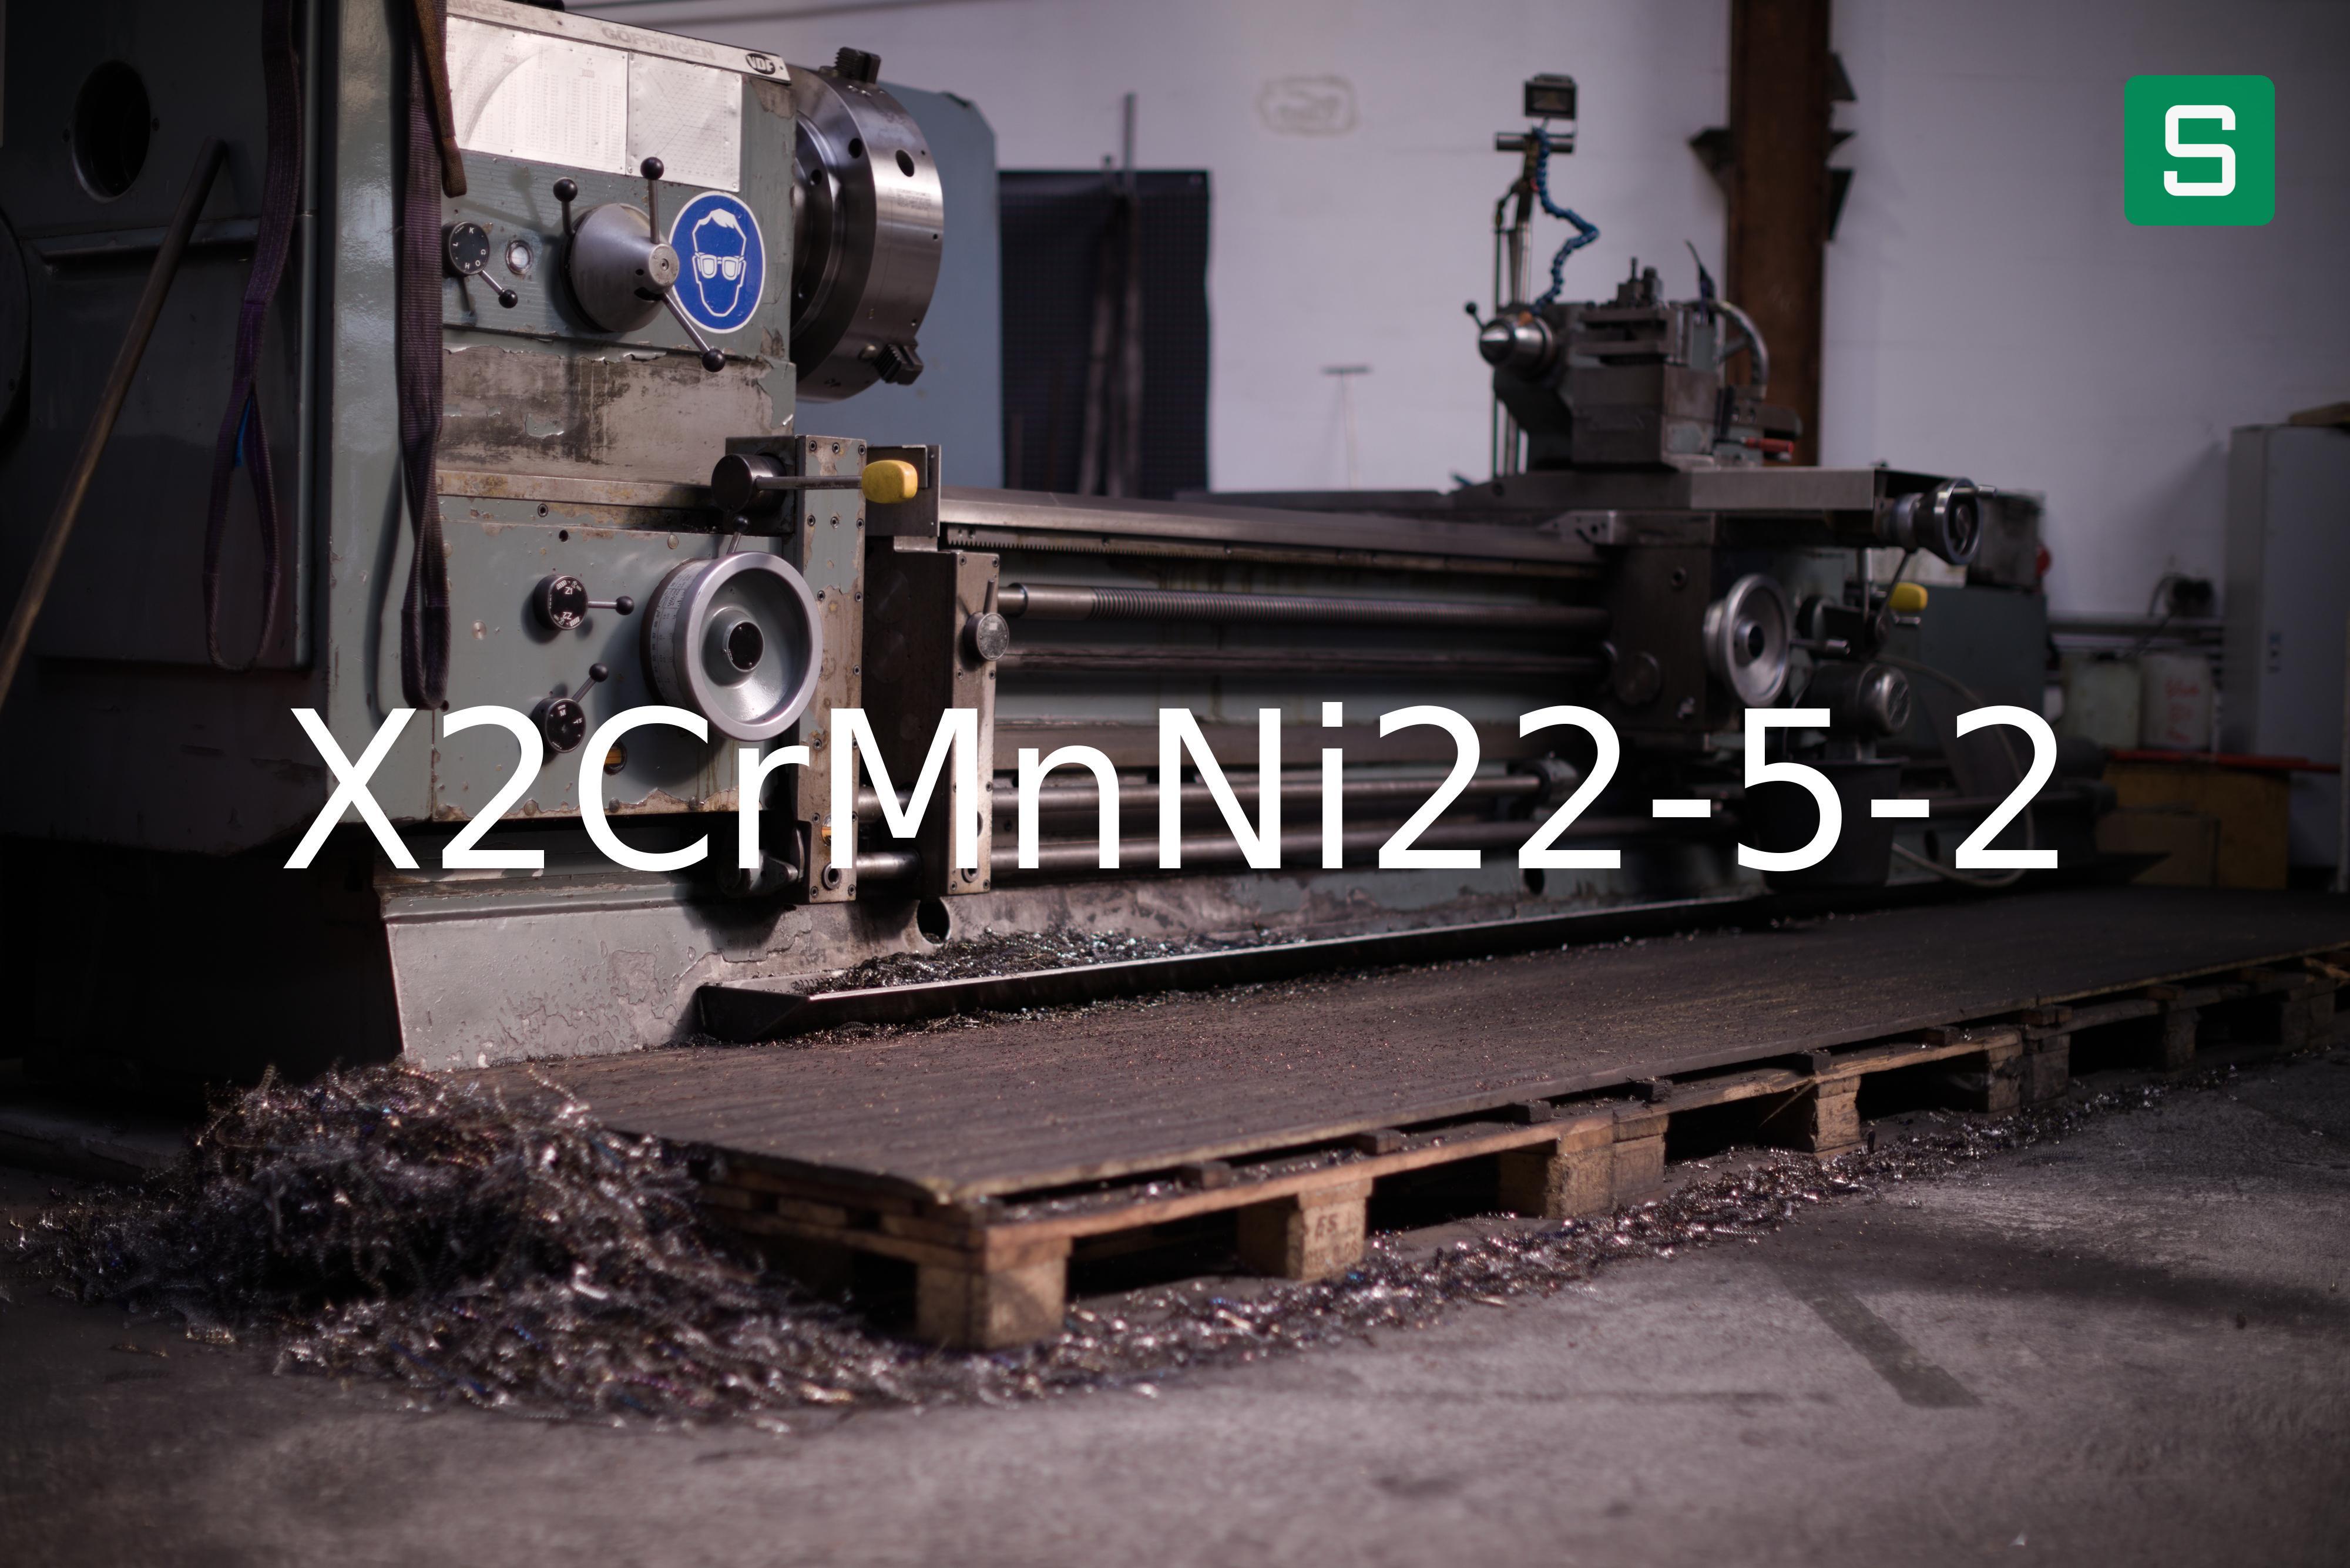 Steel Material: X2CrMnNi22-5-2